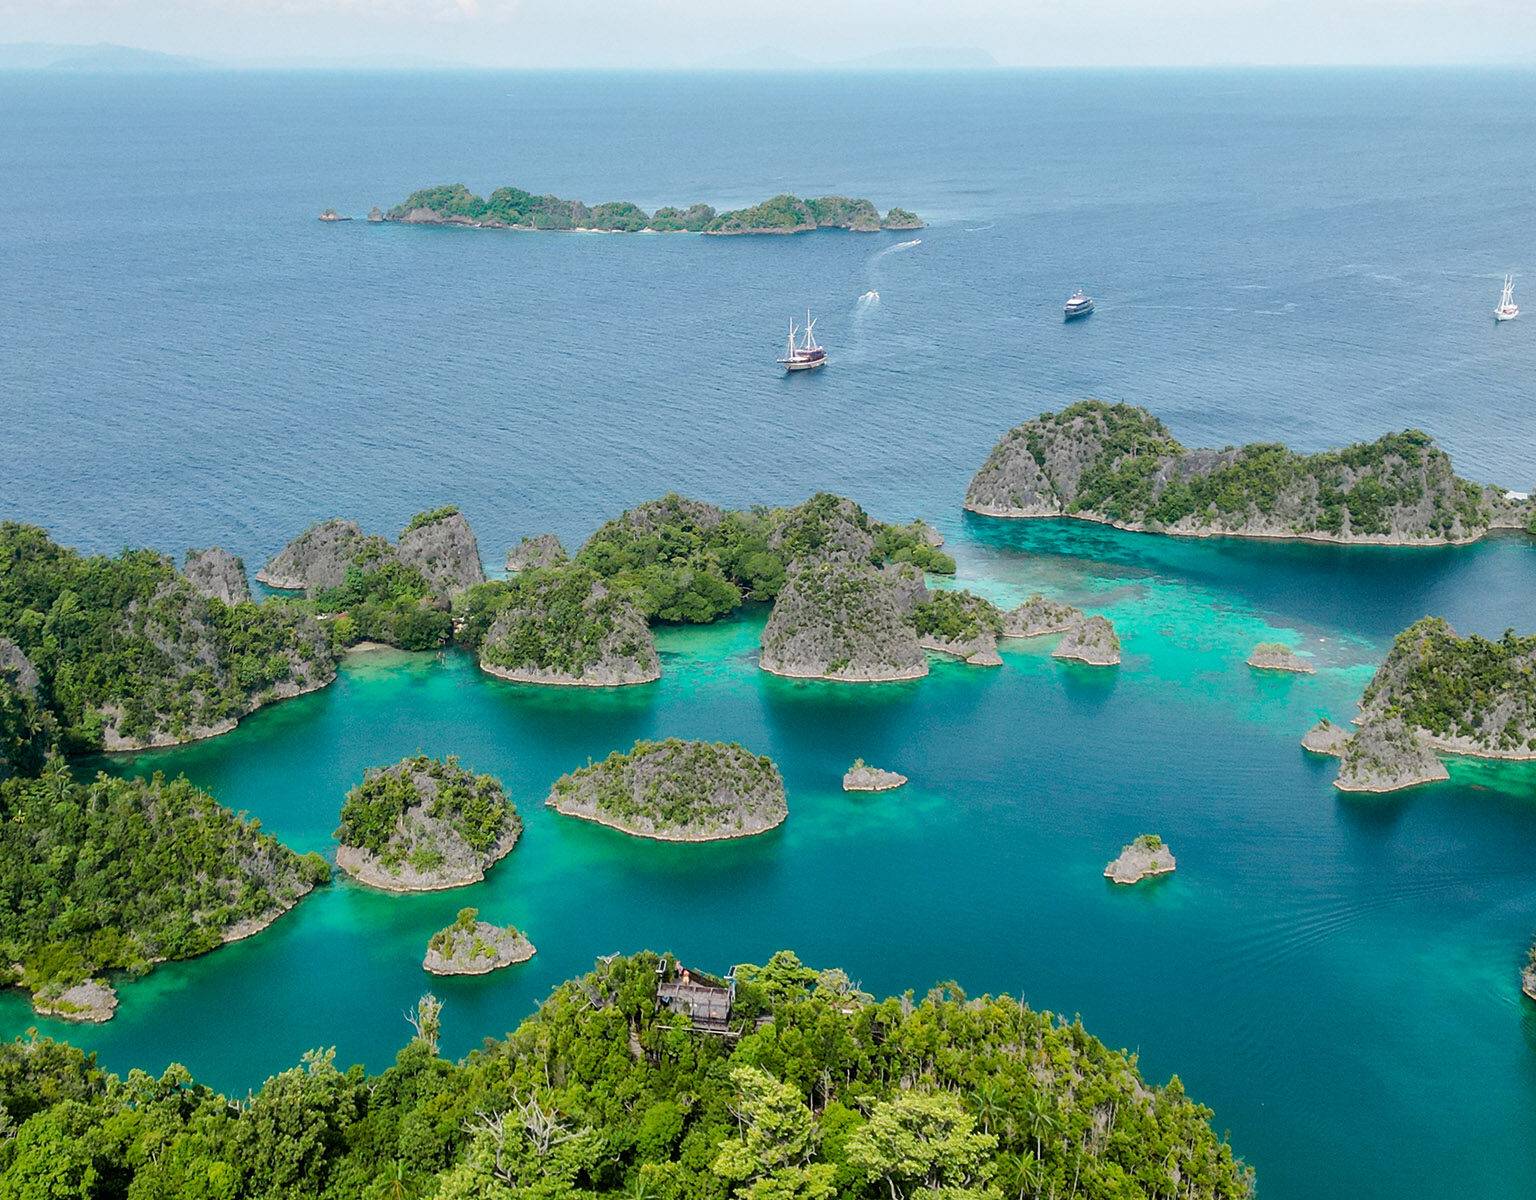 Kleine steinerne Inseln umgeben von türkisblauem Meer bei Piaynemo Island auf Raja Ampat.